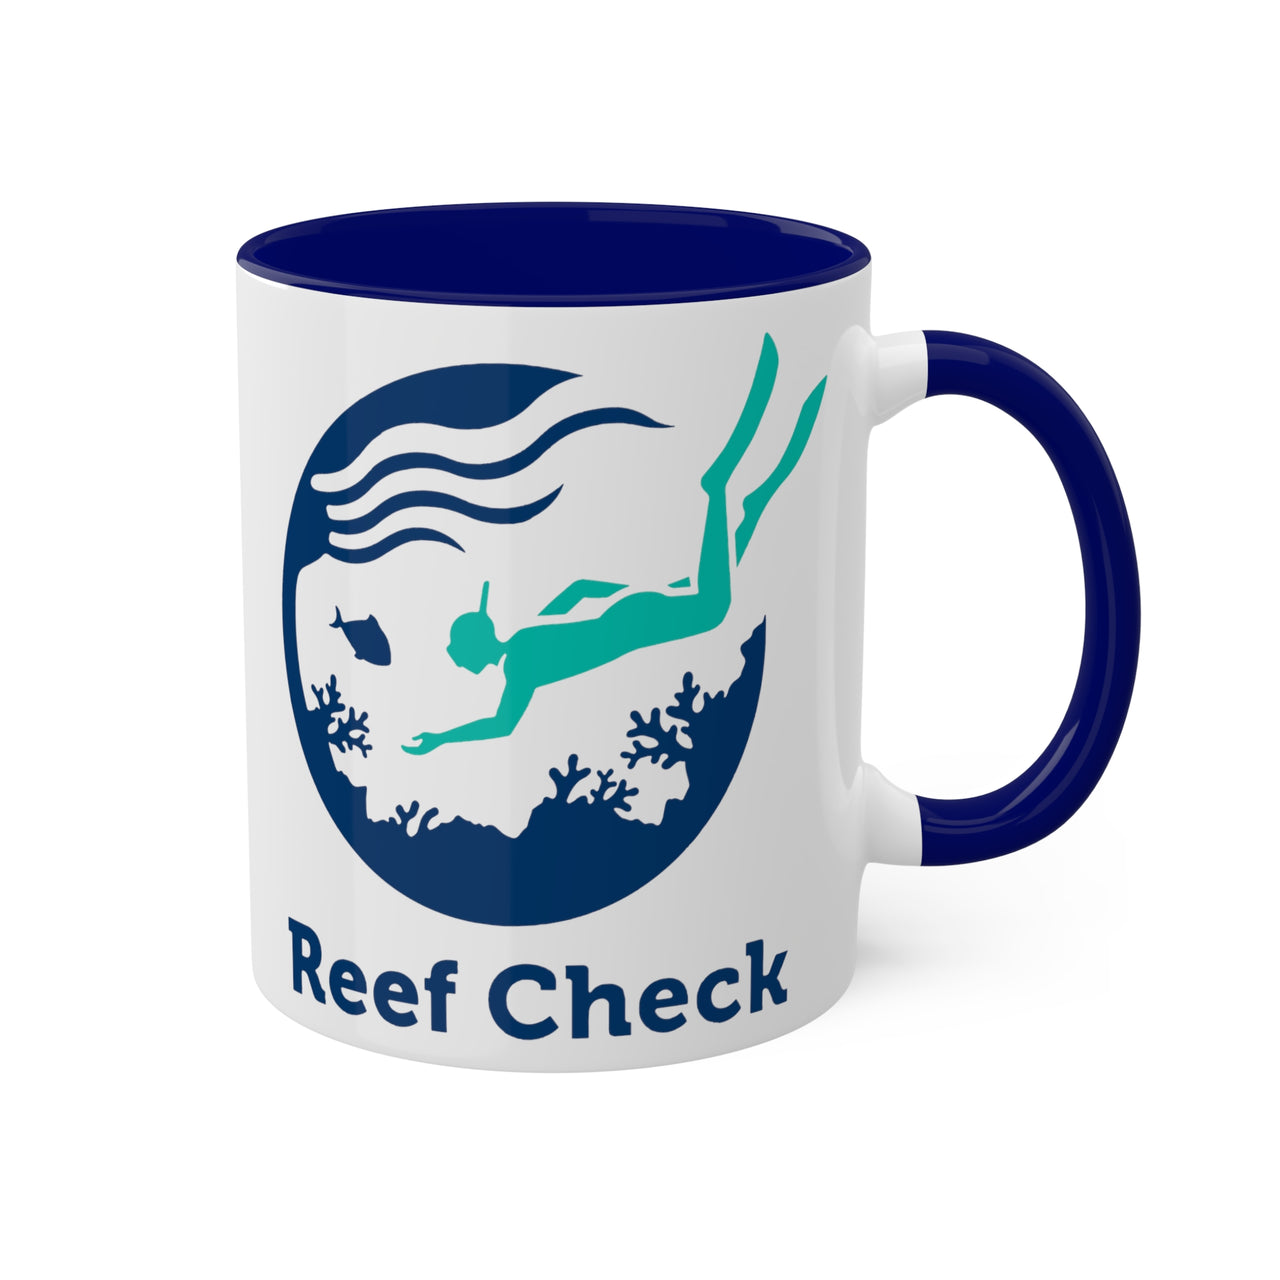 Reef Check- Ceramic Mug, 11oz